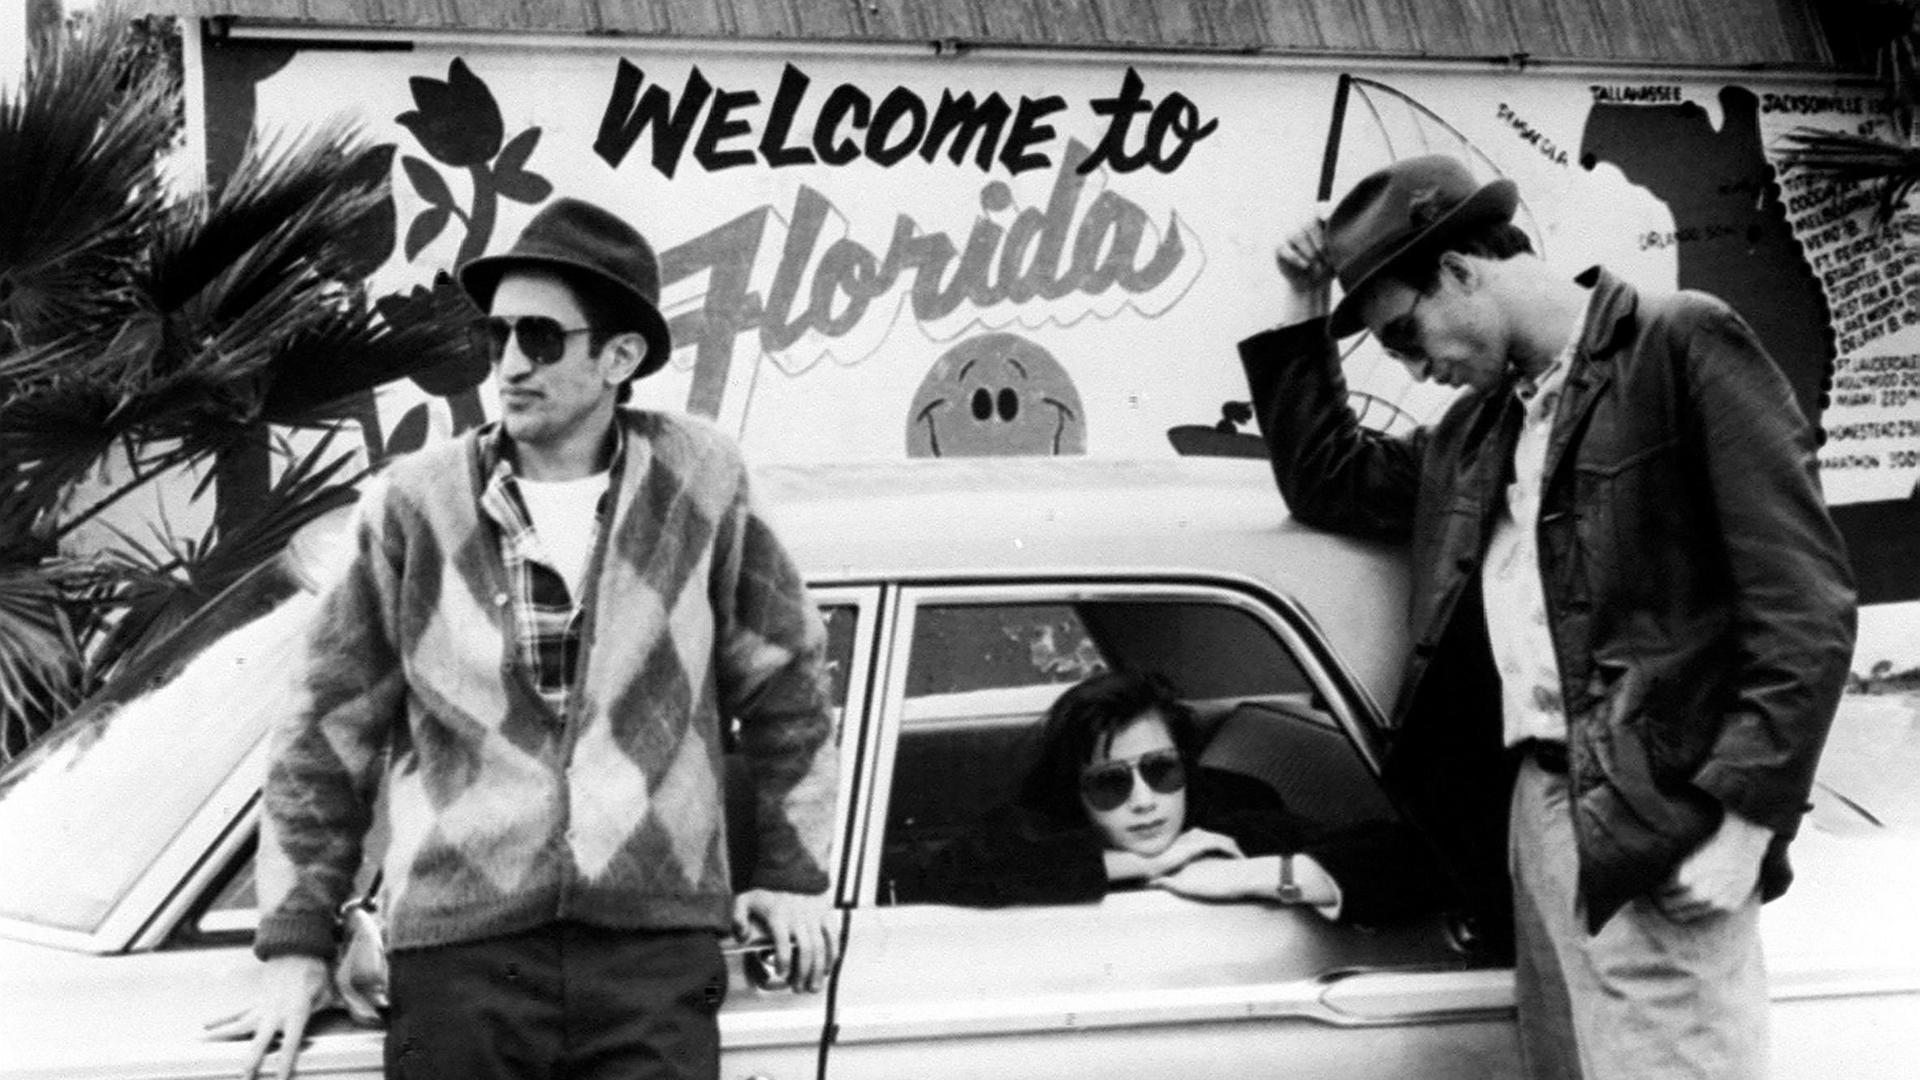 Zwei Männer lehnen an einem Auto, in dem eine Frau sitzt und aus dem Fenster schaut. Im Hintergrund steht auf einer Wand "Welcome to Florida"